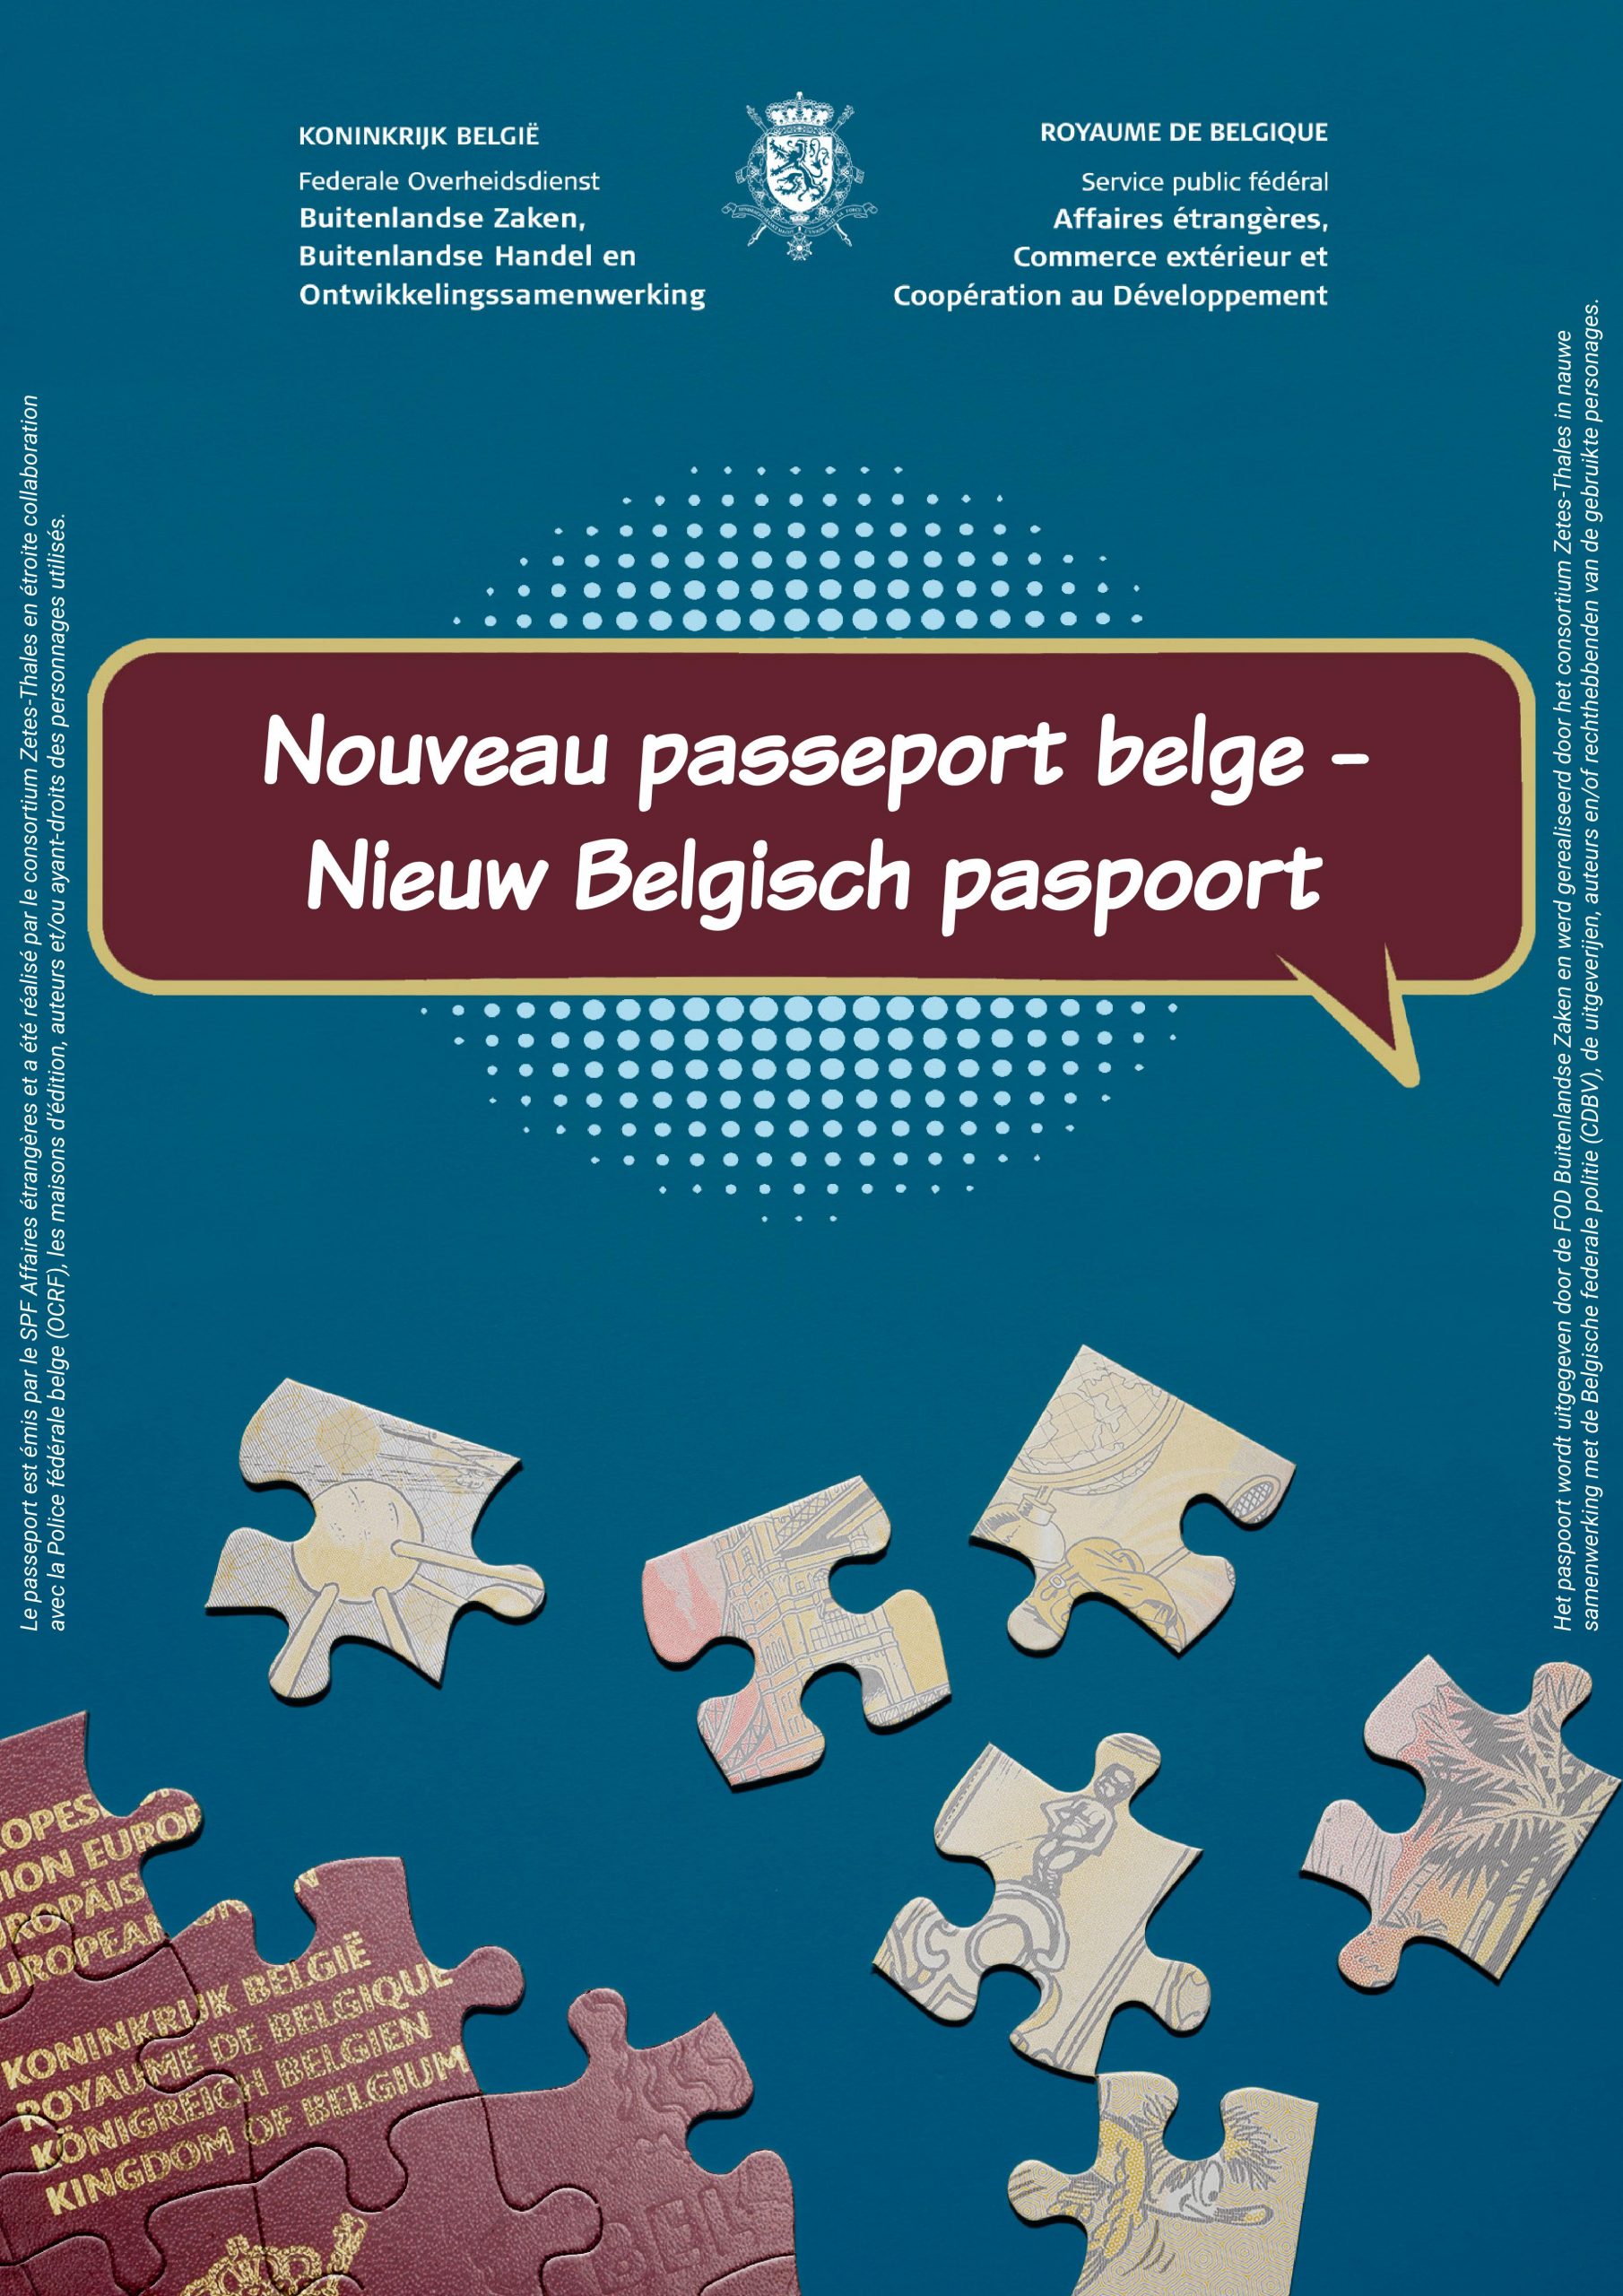 Un nouveau passeport dépaysant!